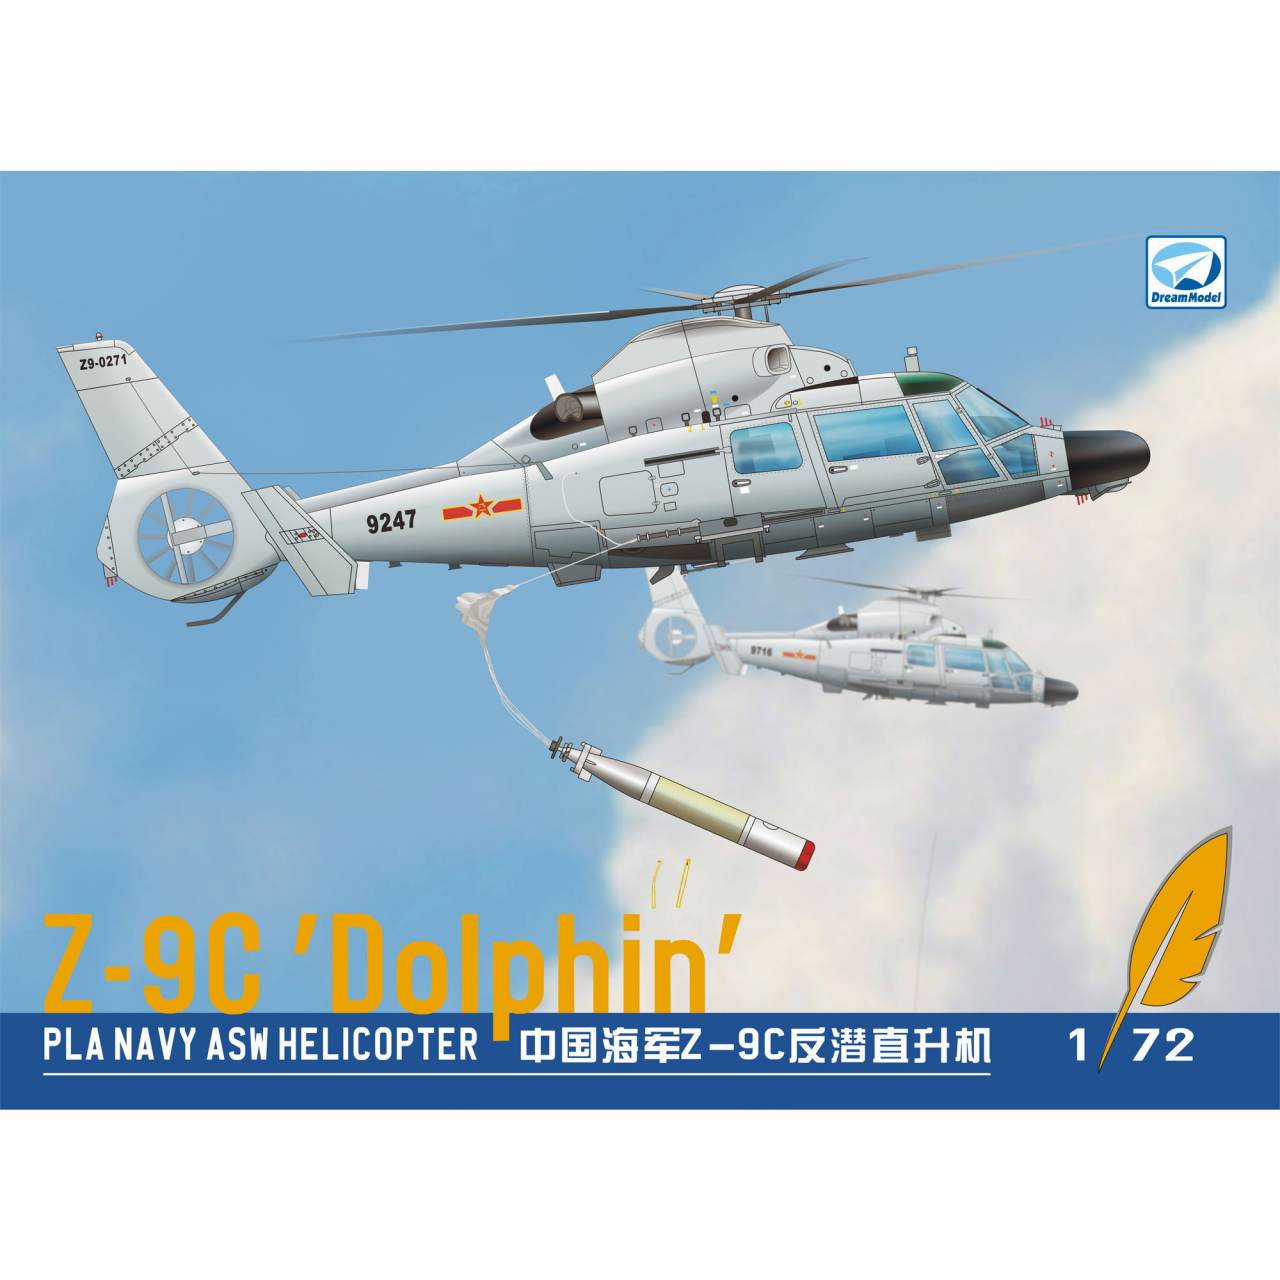 【新製品】DM720004 中国海軍 Z-9C/EC ヘリコプター 牽引車付き